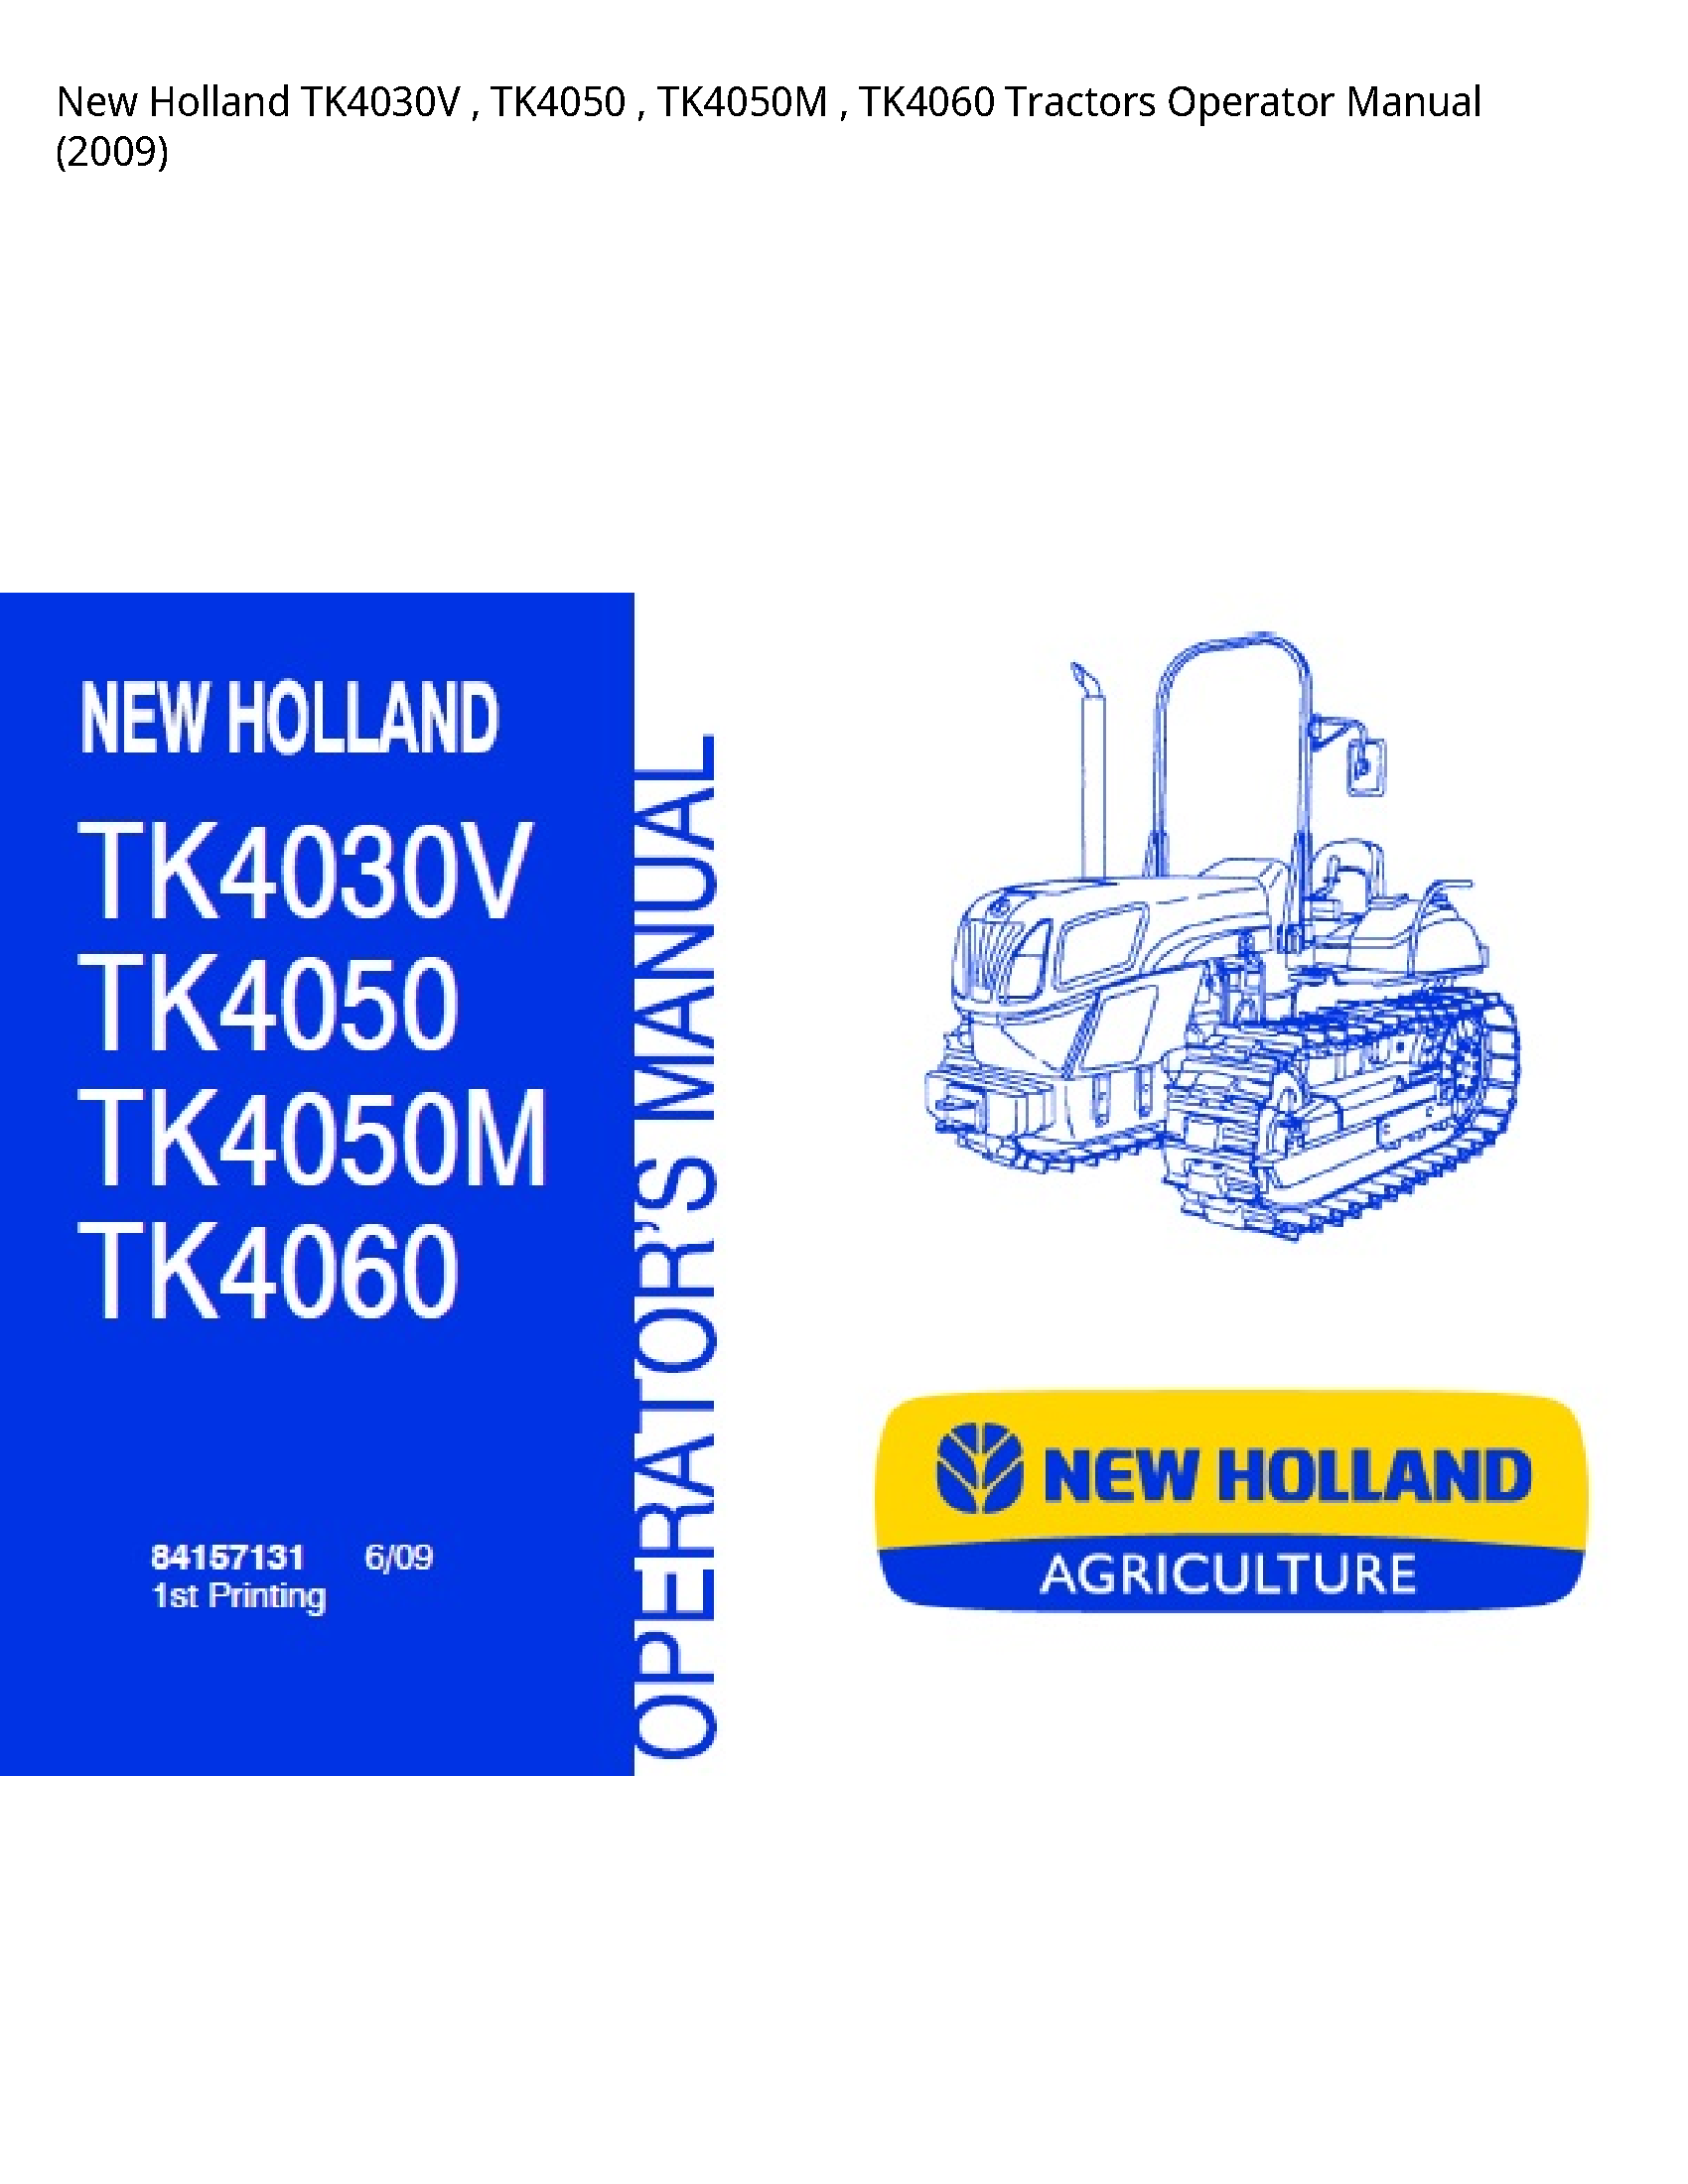 New Holland TK4030V Tractors Operator manual